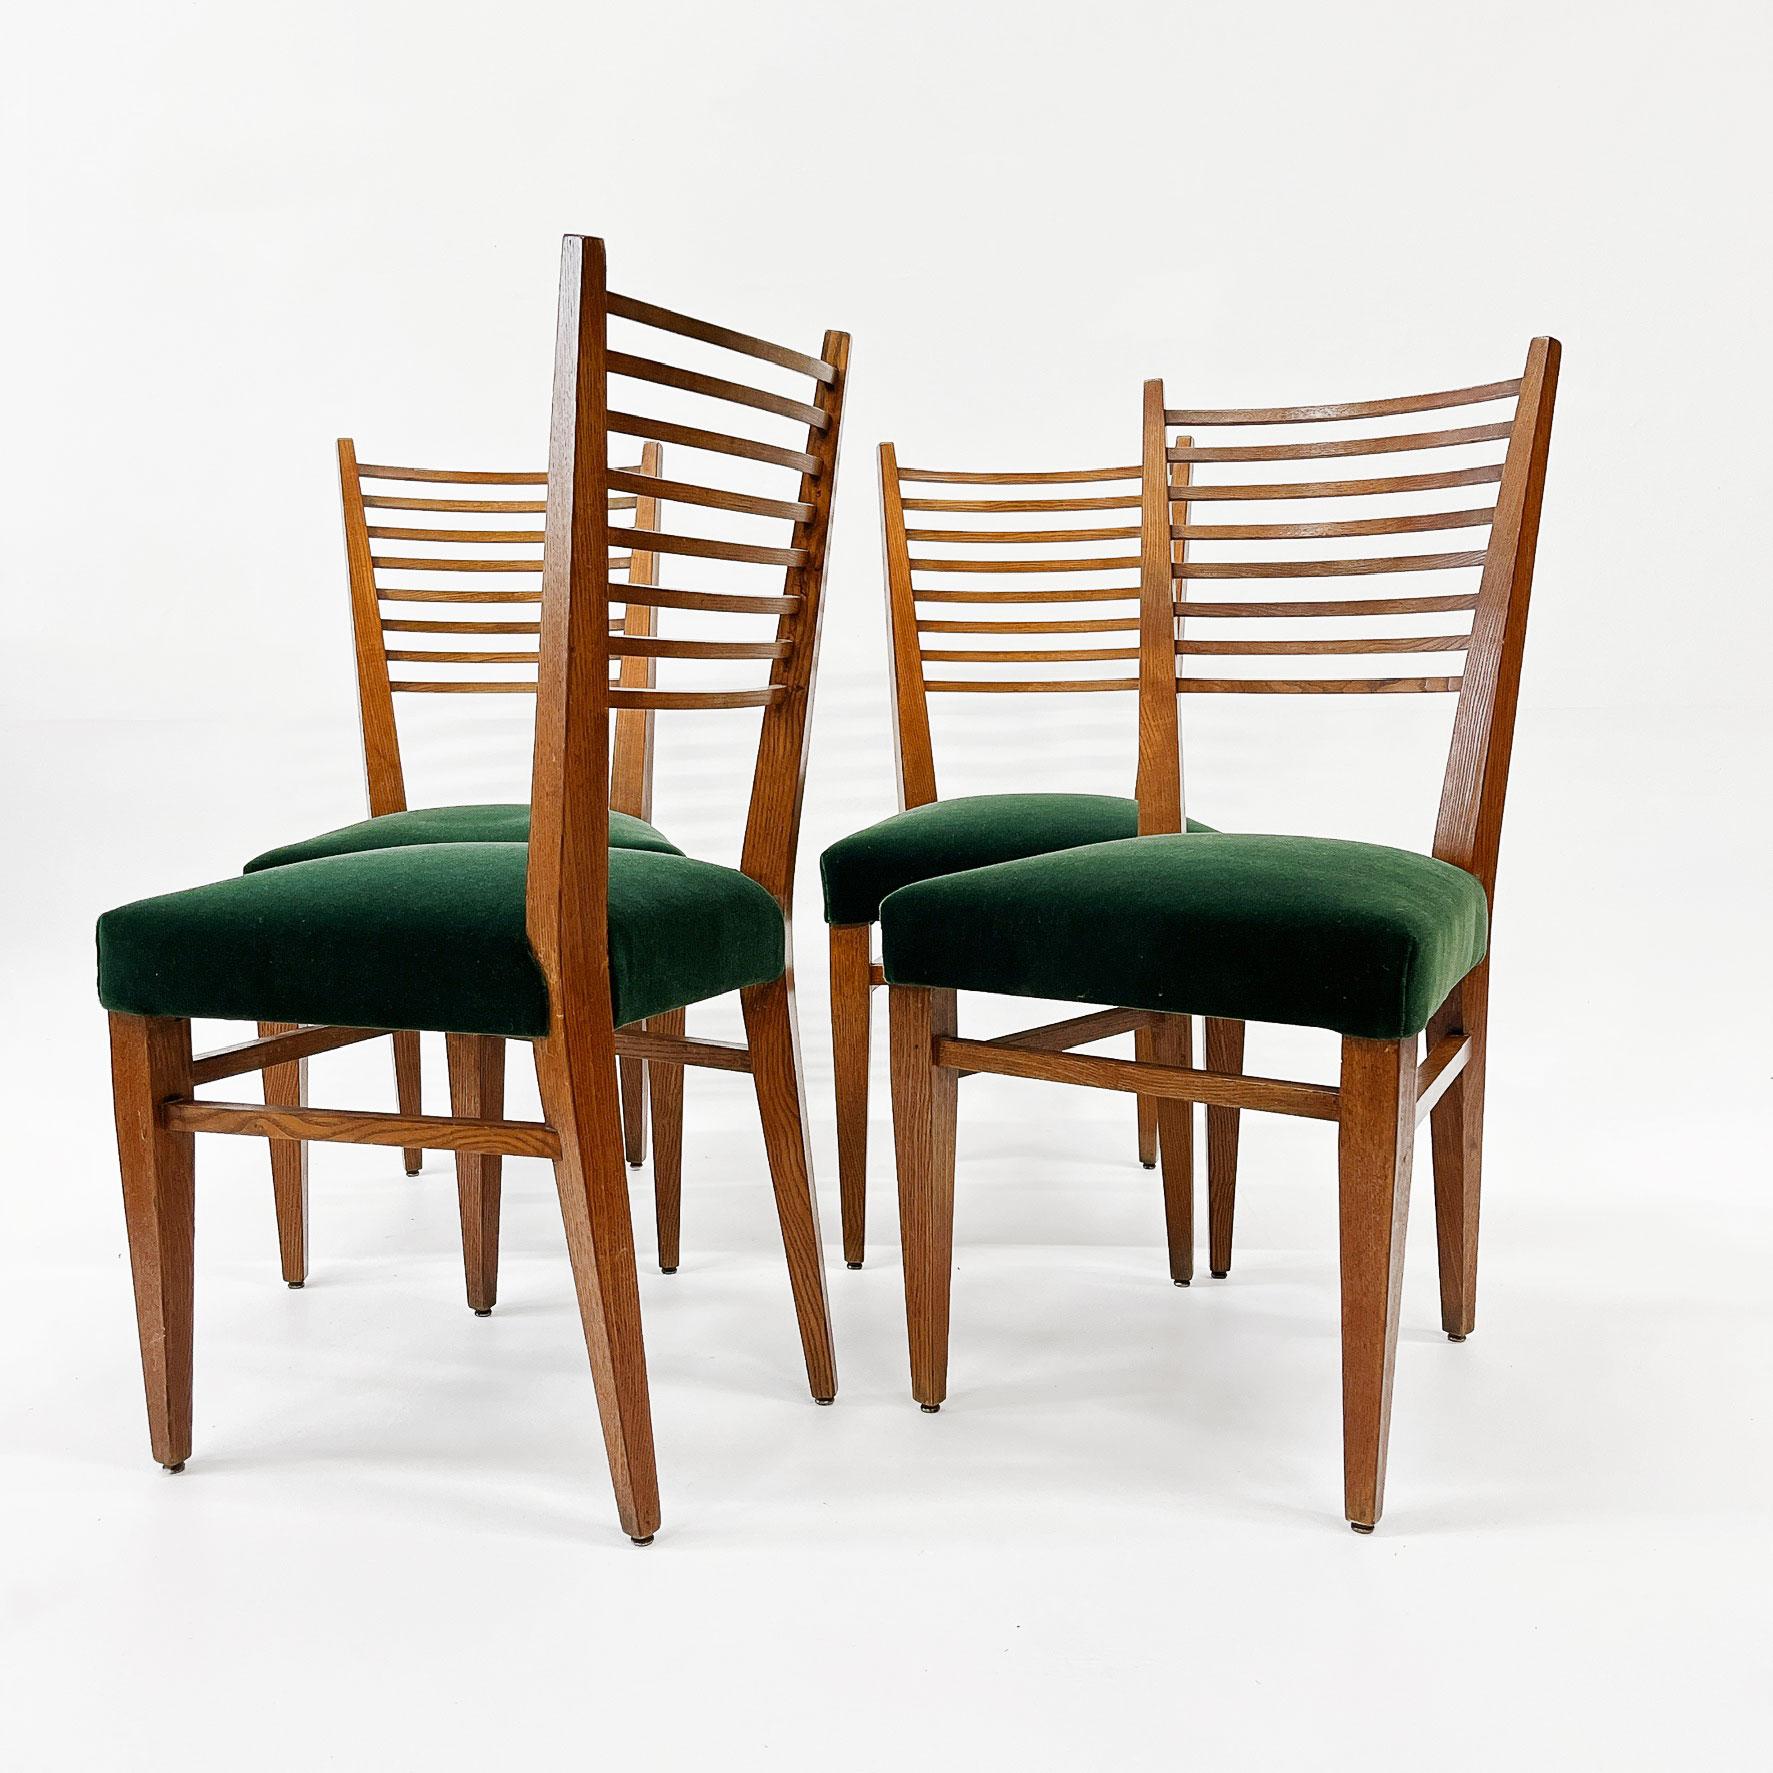 Satz von vier französischen Eichenstühlen mit Leiterrücken in der Art von Gio Ponti mit neu gepolstertem Sitz in einem schönen smaragdgrünen Mohair, ca. 1950er Jahre.